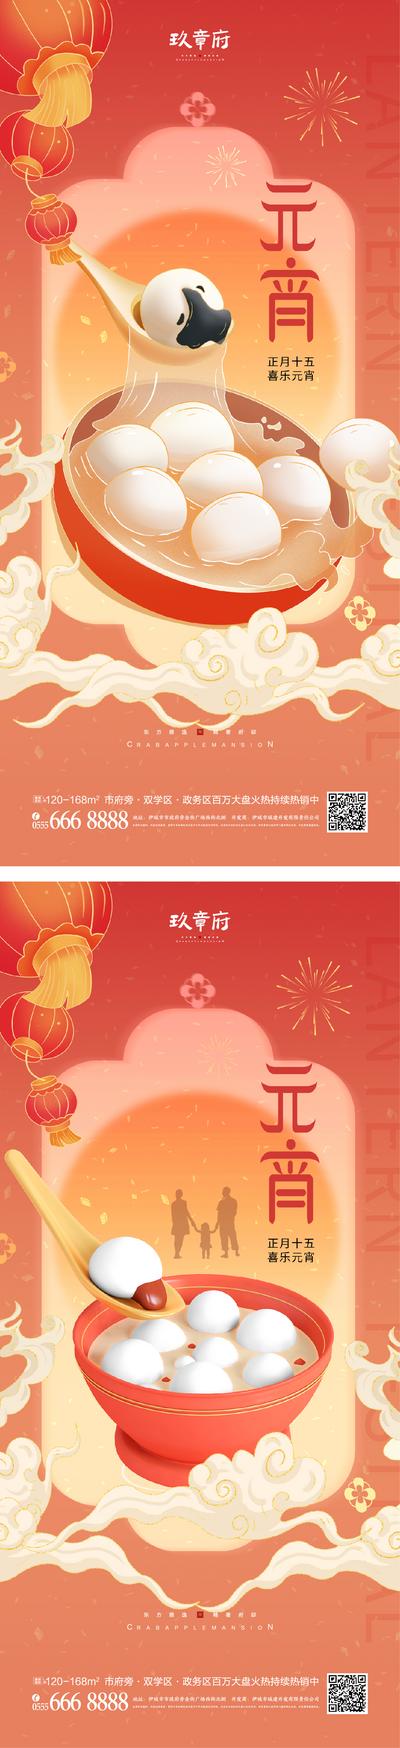 南门网 海报 中国传统节日 元宵节 正月十五 国潮 元宵 汤圆 烟花 灯笼